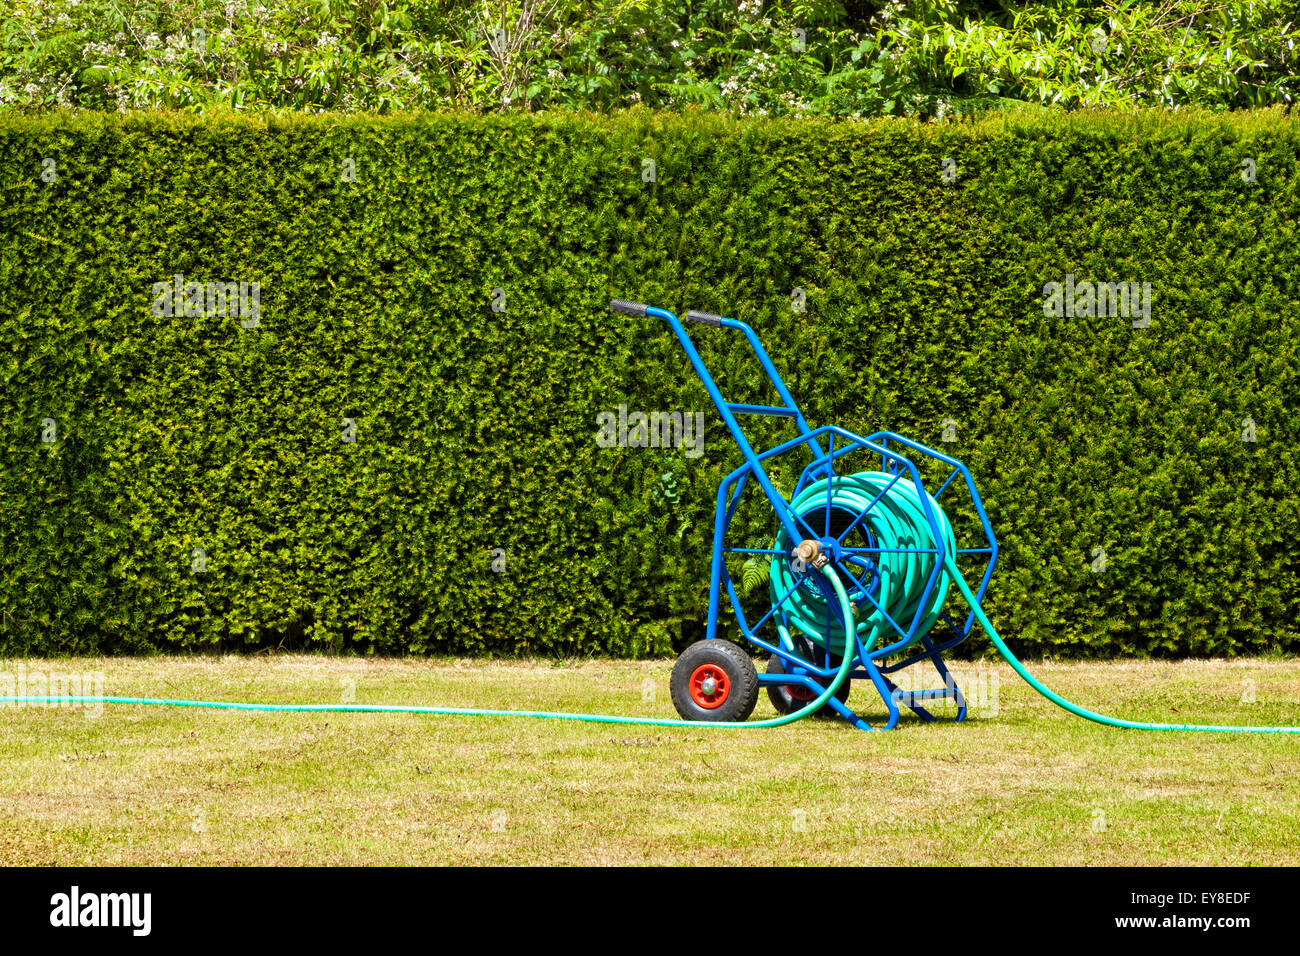 Heavy duty bleu enrouleur de tuyau de jardin, chariot pour arrosage de jardin sur pelouse desséchée qui n'a souffert de la sécheresse Banque D'Images